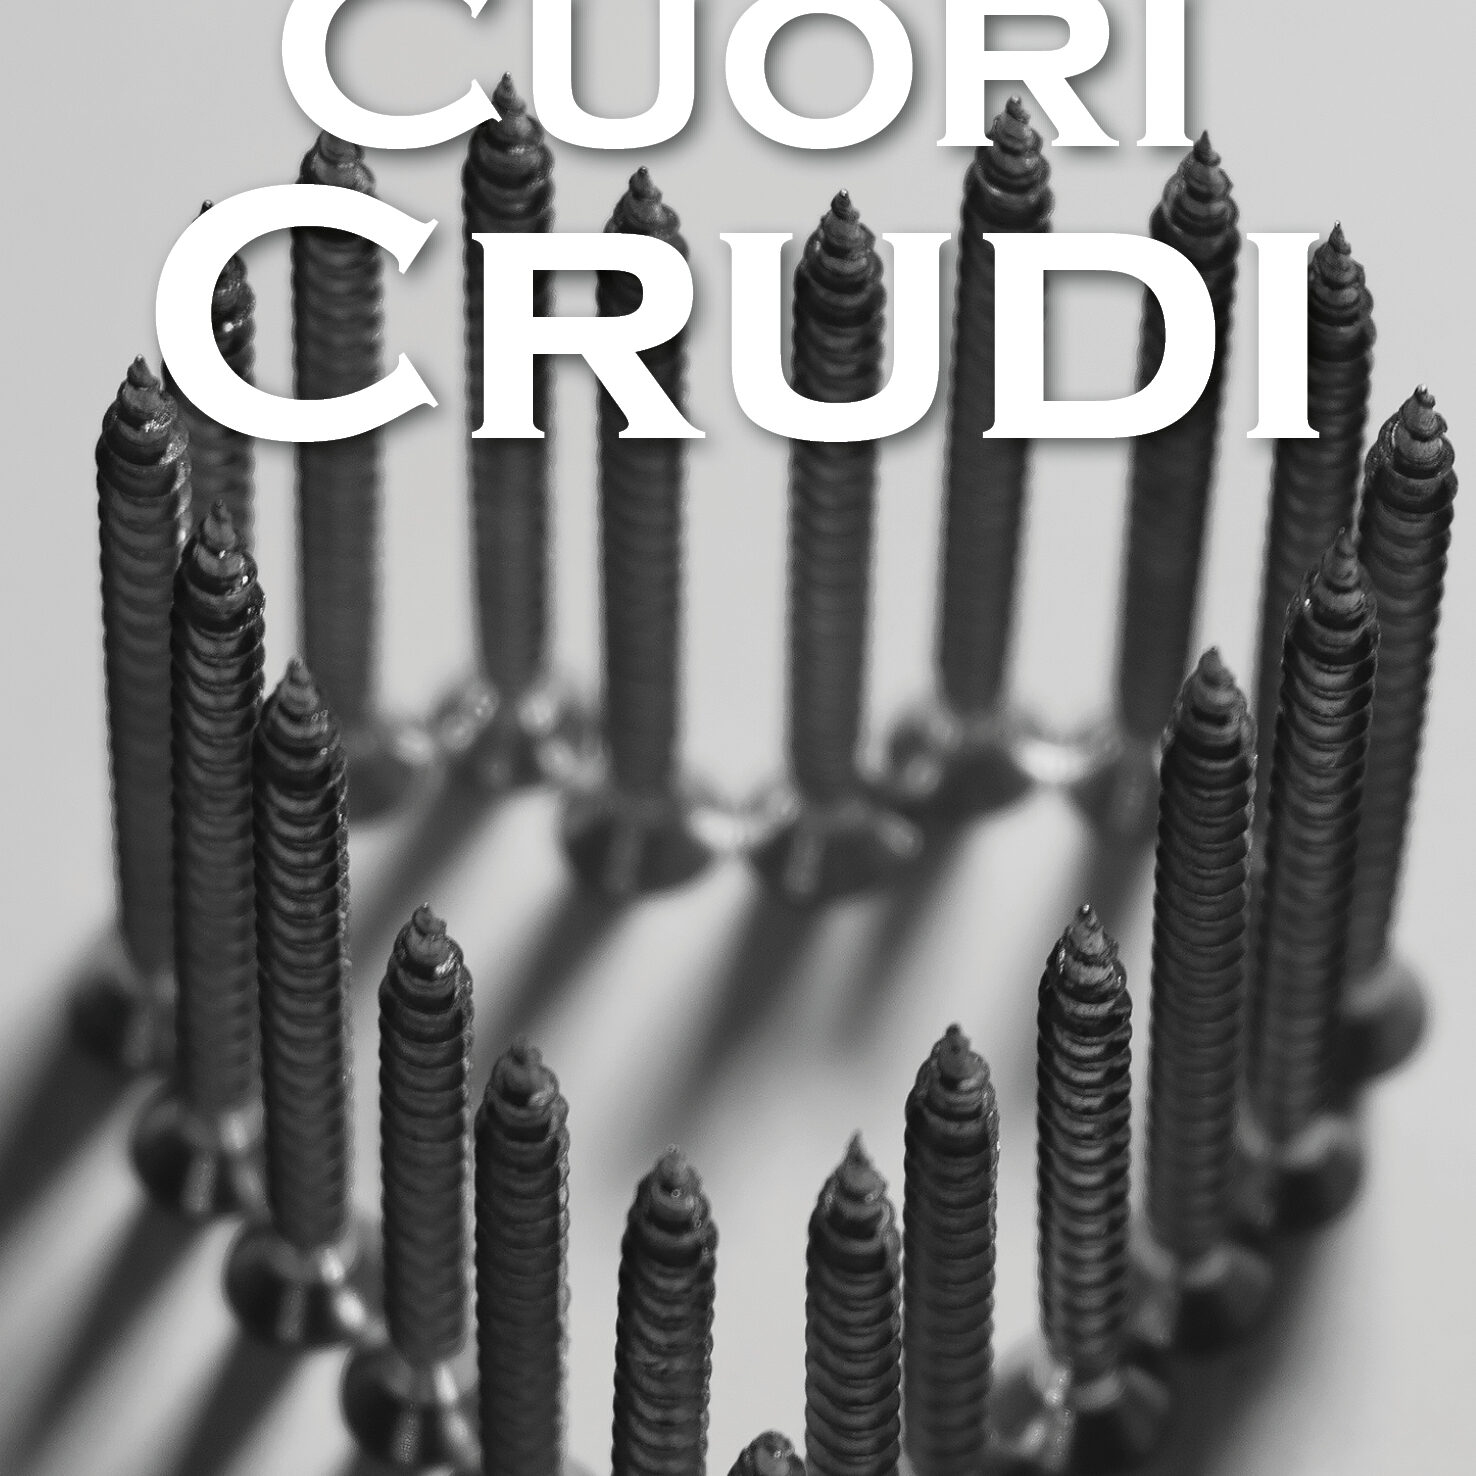 copertina Cuori Crudi300120213